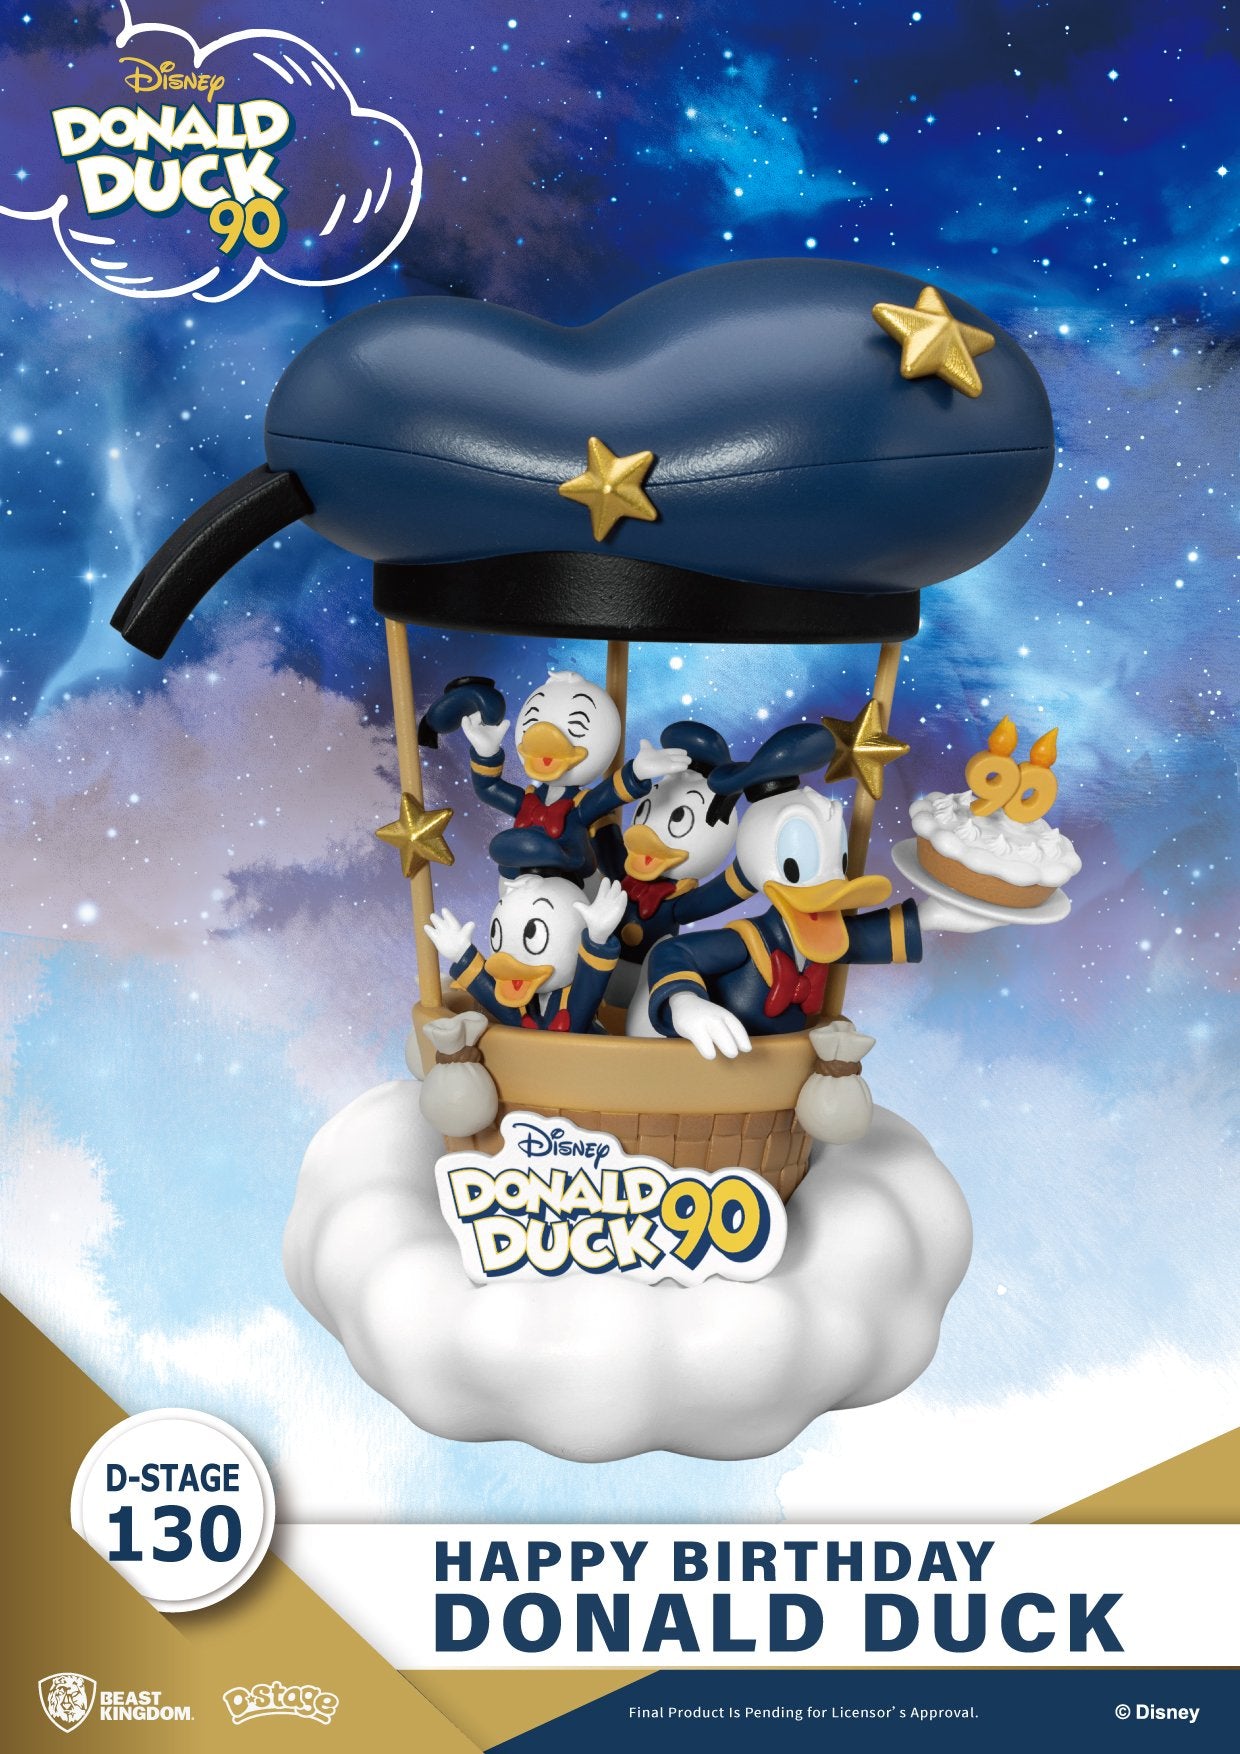 DISNEY Donald Duck "90ème Anniversaire" Diorama D-Stage 14cm